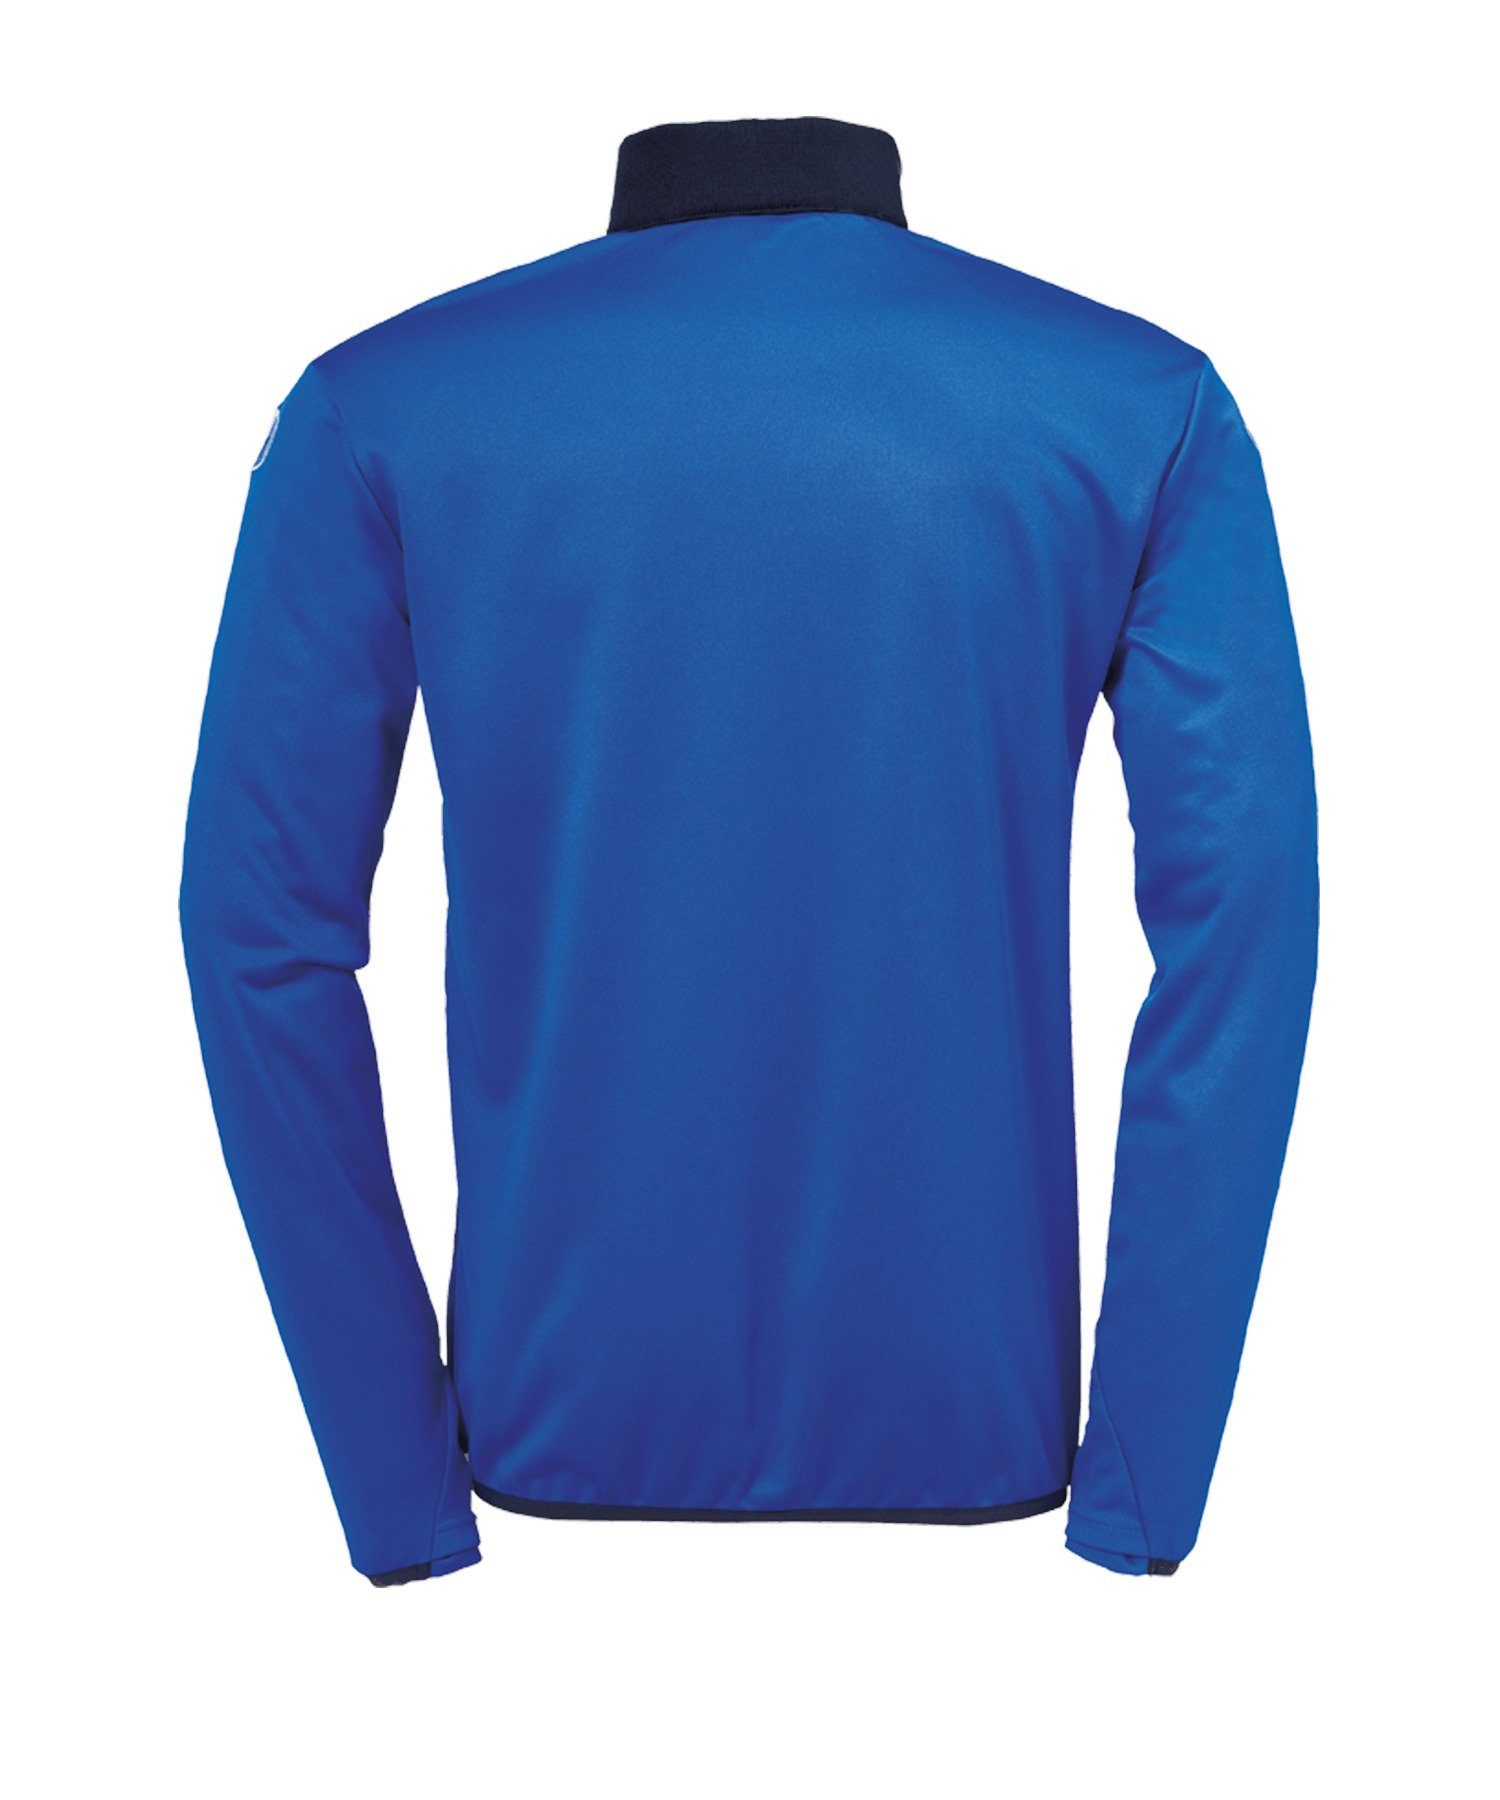 uhlsport Sweatshirt Offense 23 Ziptop blaugelb